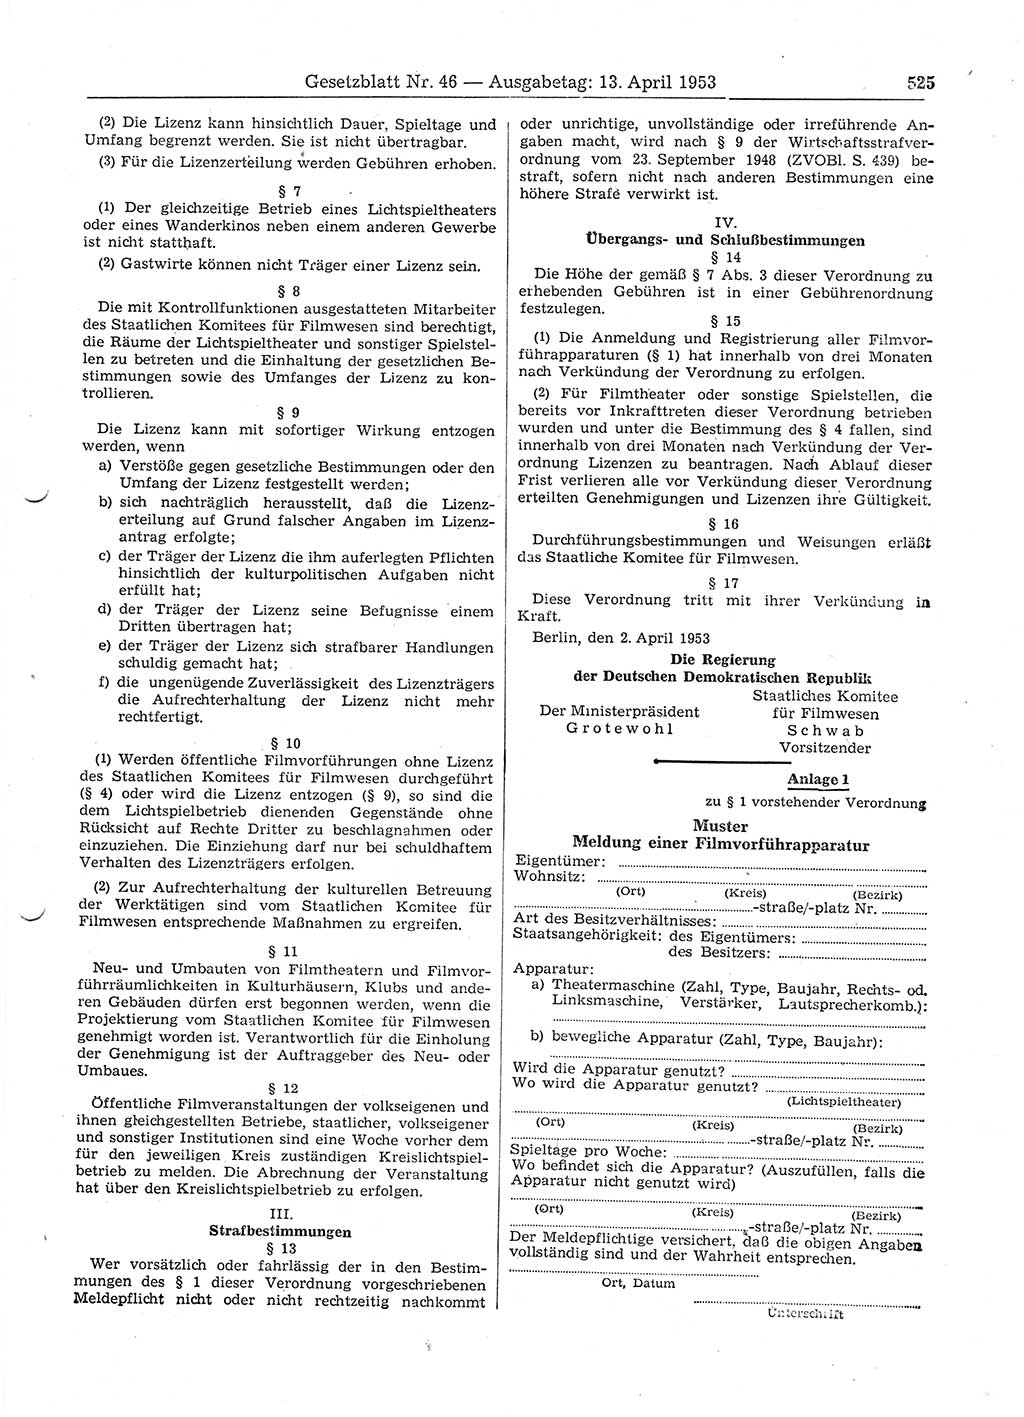 Gesetzblatt (GBl.) der Deutschen Demokratischen Republik (DDR) 1953, Seite 525 (GBl. DDR 1953, S. 525)